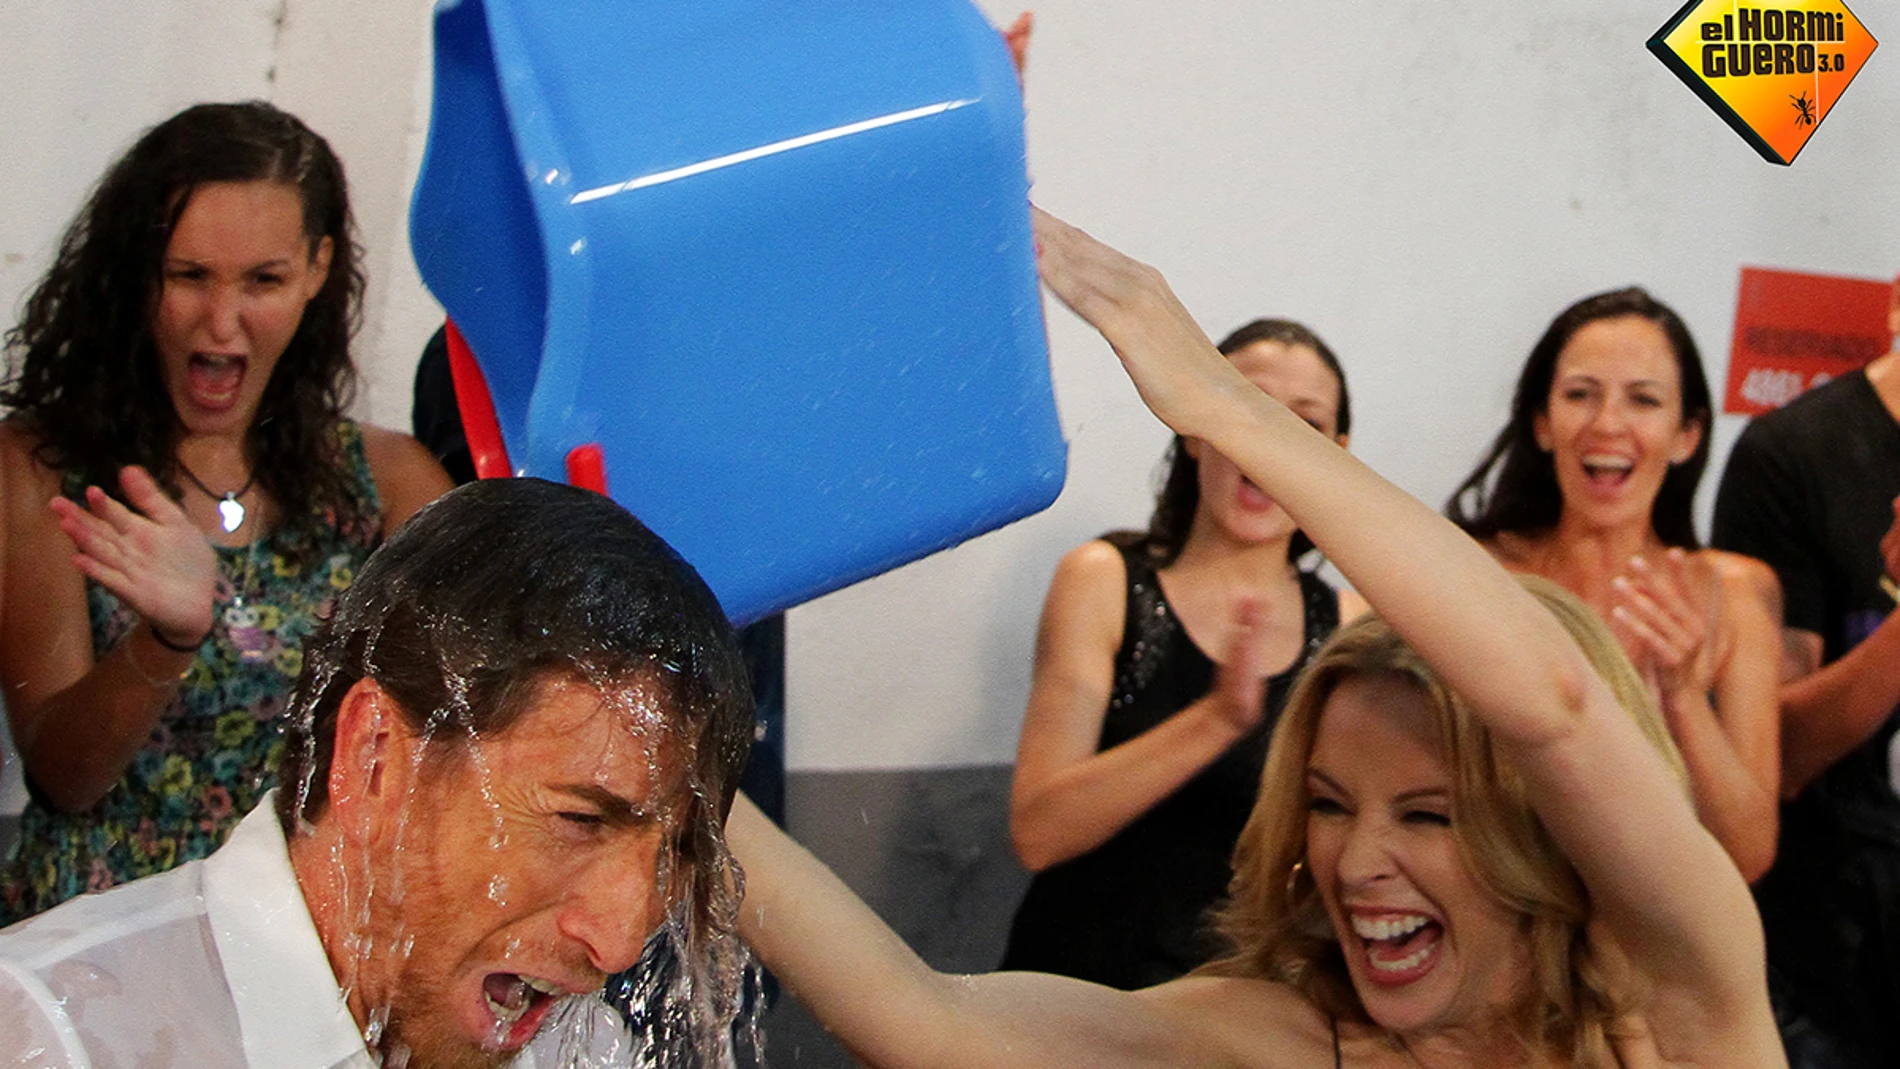 Pablo Motos realiza el Ice bucket challenge